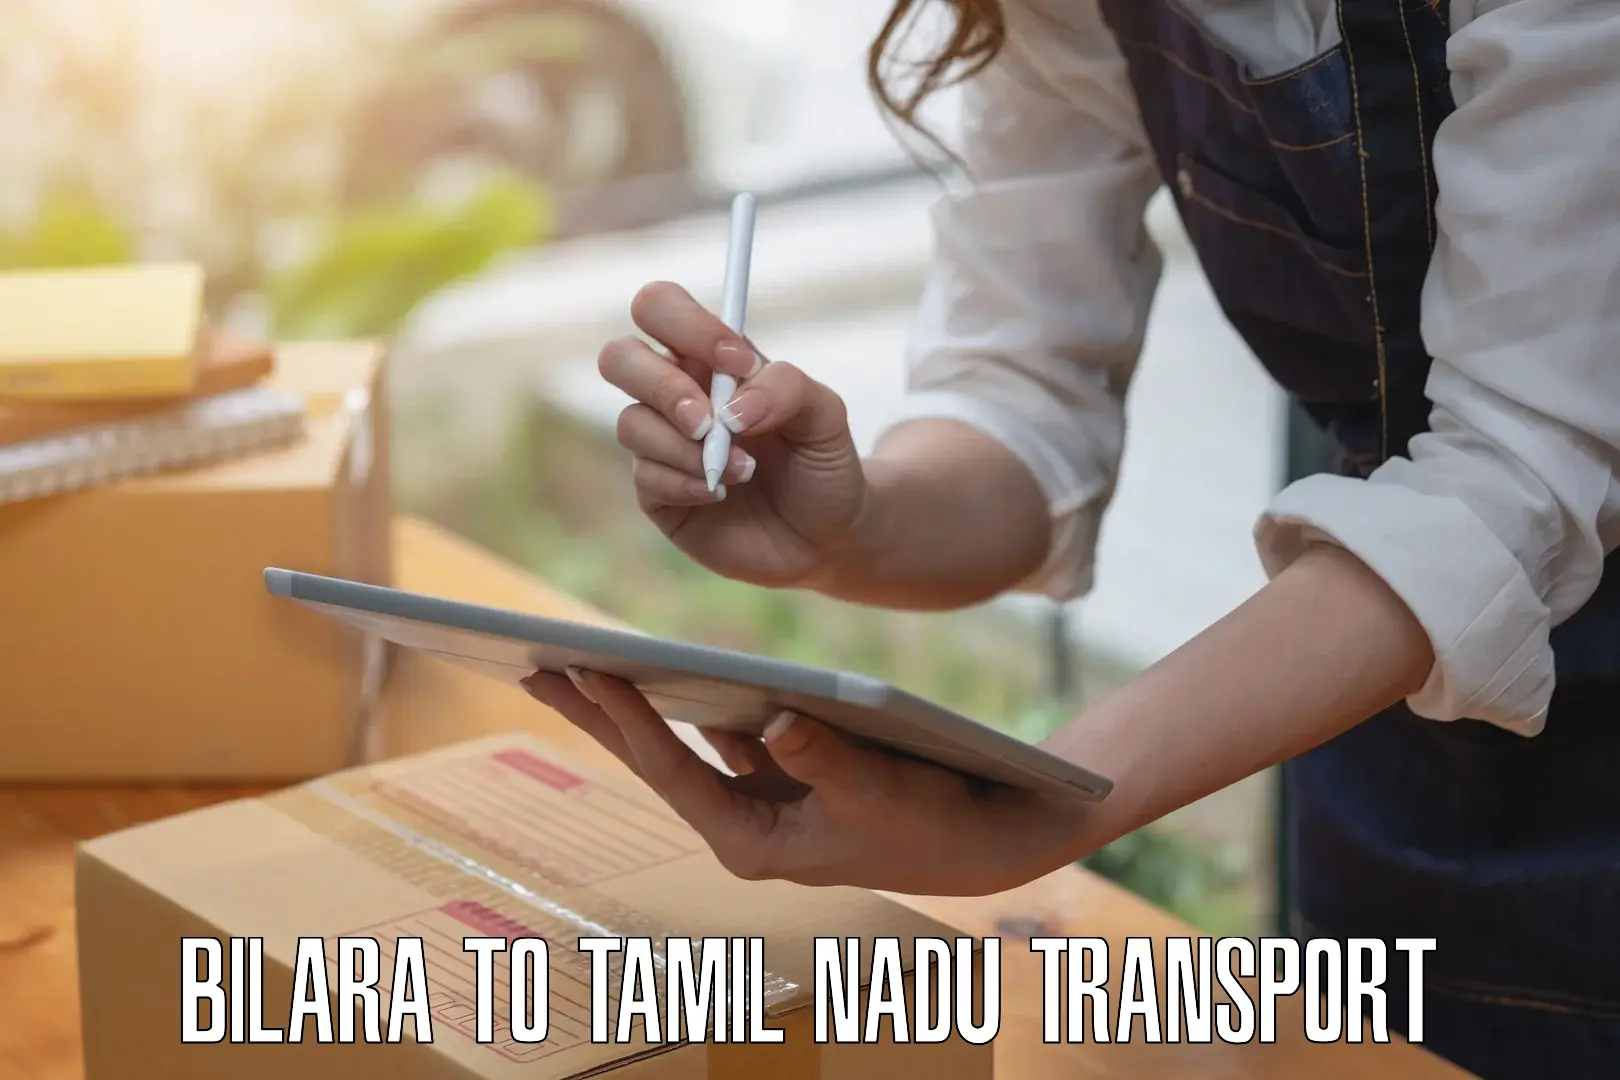 Transportation services Bilara to Tamil Nadu